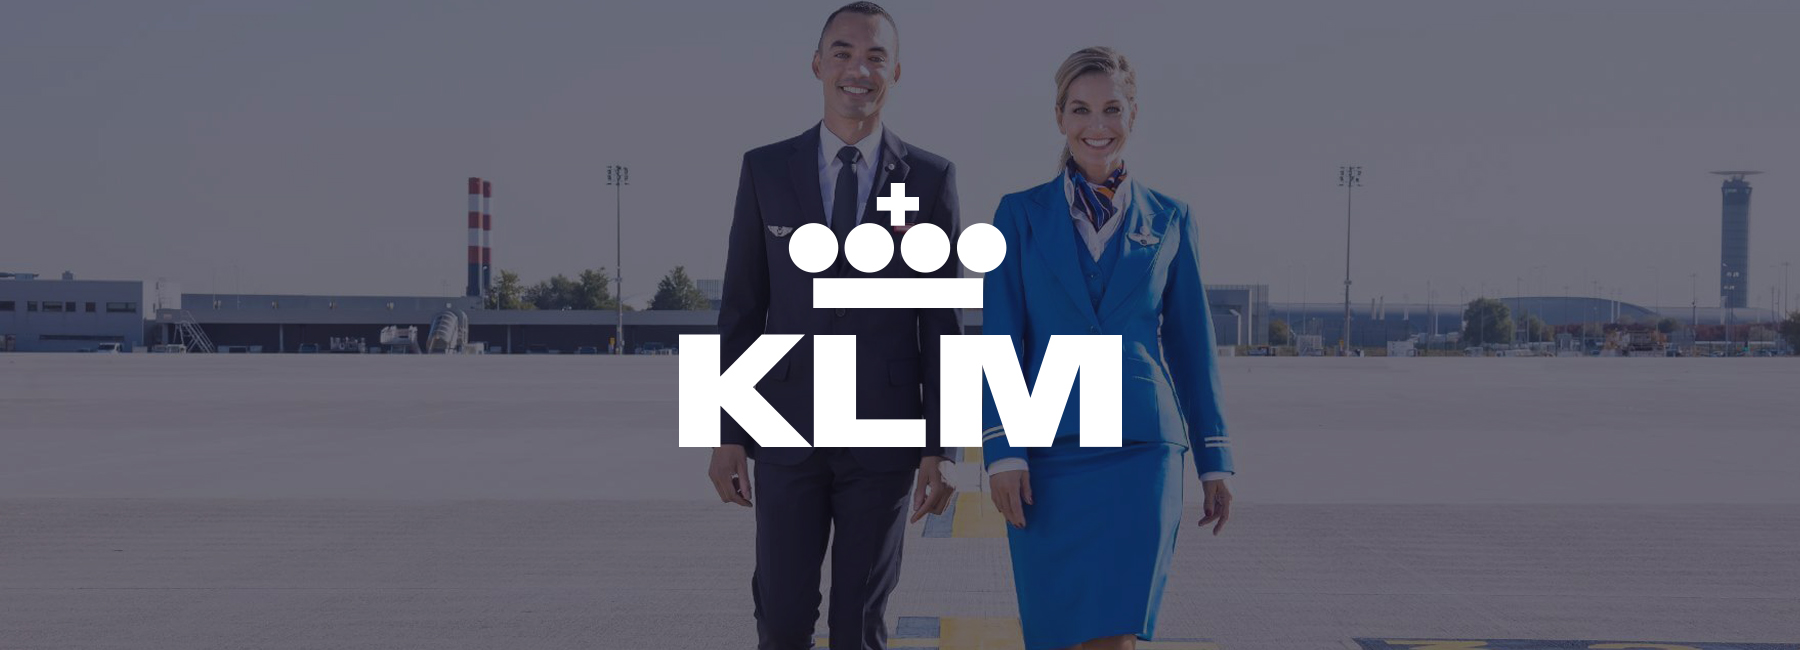 Air France-KLM améliore son système de connaissances interne grâce à Mopinion